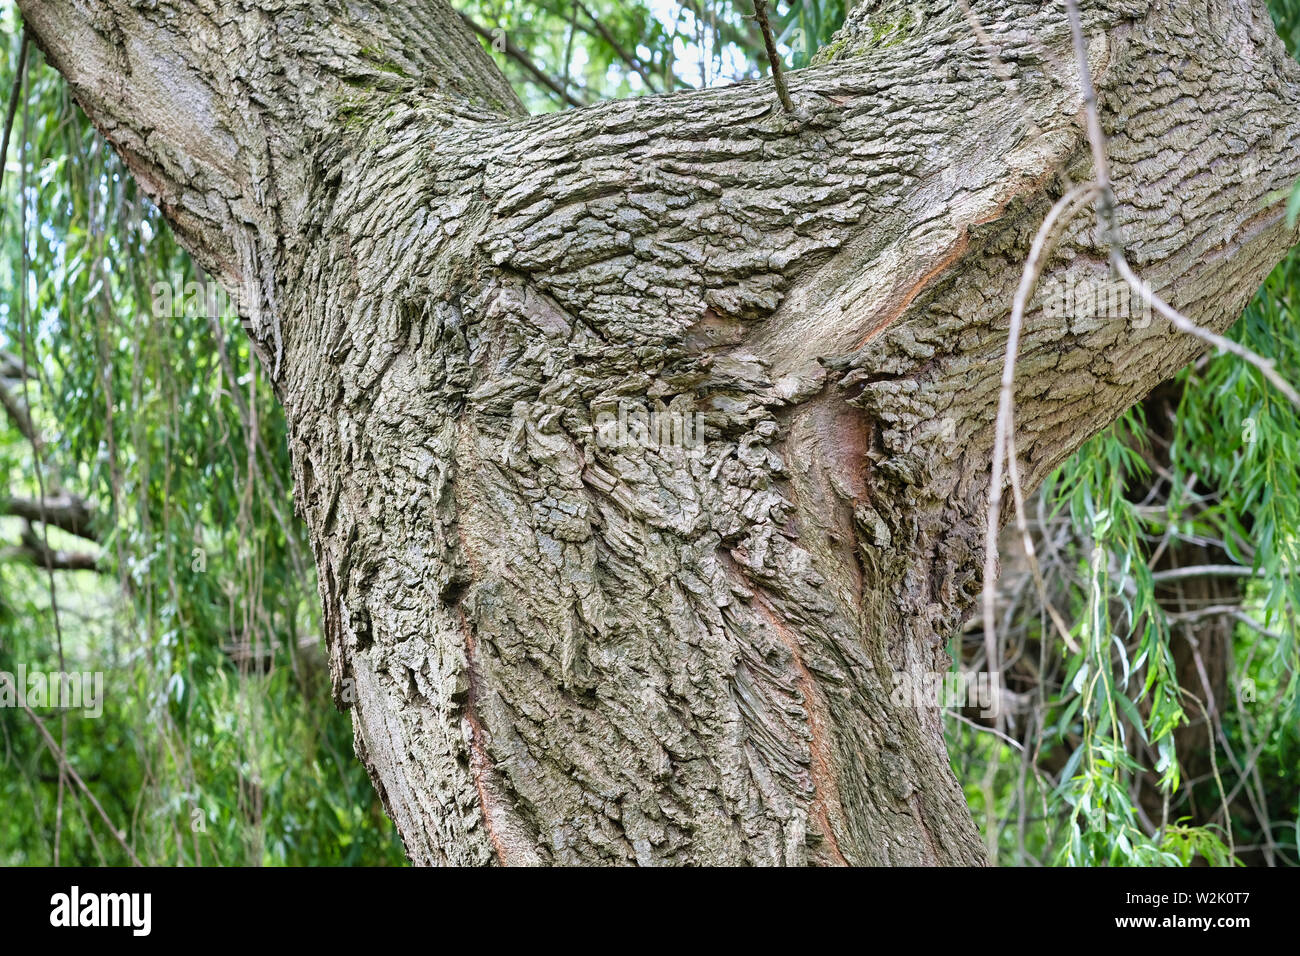 West Sussex, Angleterre, Royaume-Uni. Close up de tronc d'un arbre très vieux saule pleureur (Salix babylonica). L'écorce de saule produit une substance semblable à l'aspirine Banque D'Images